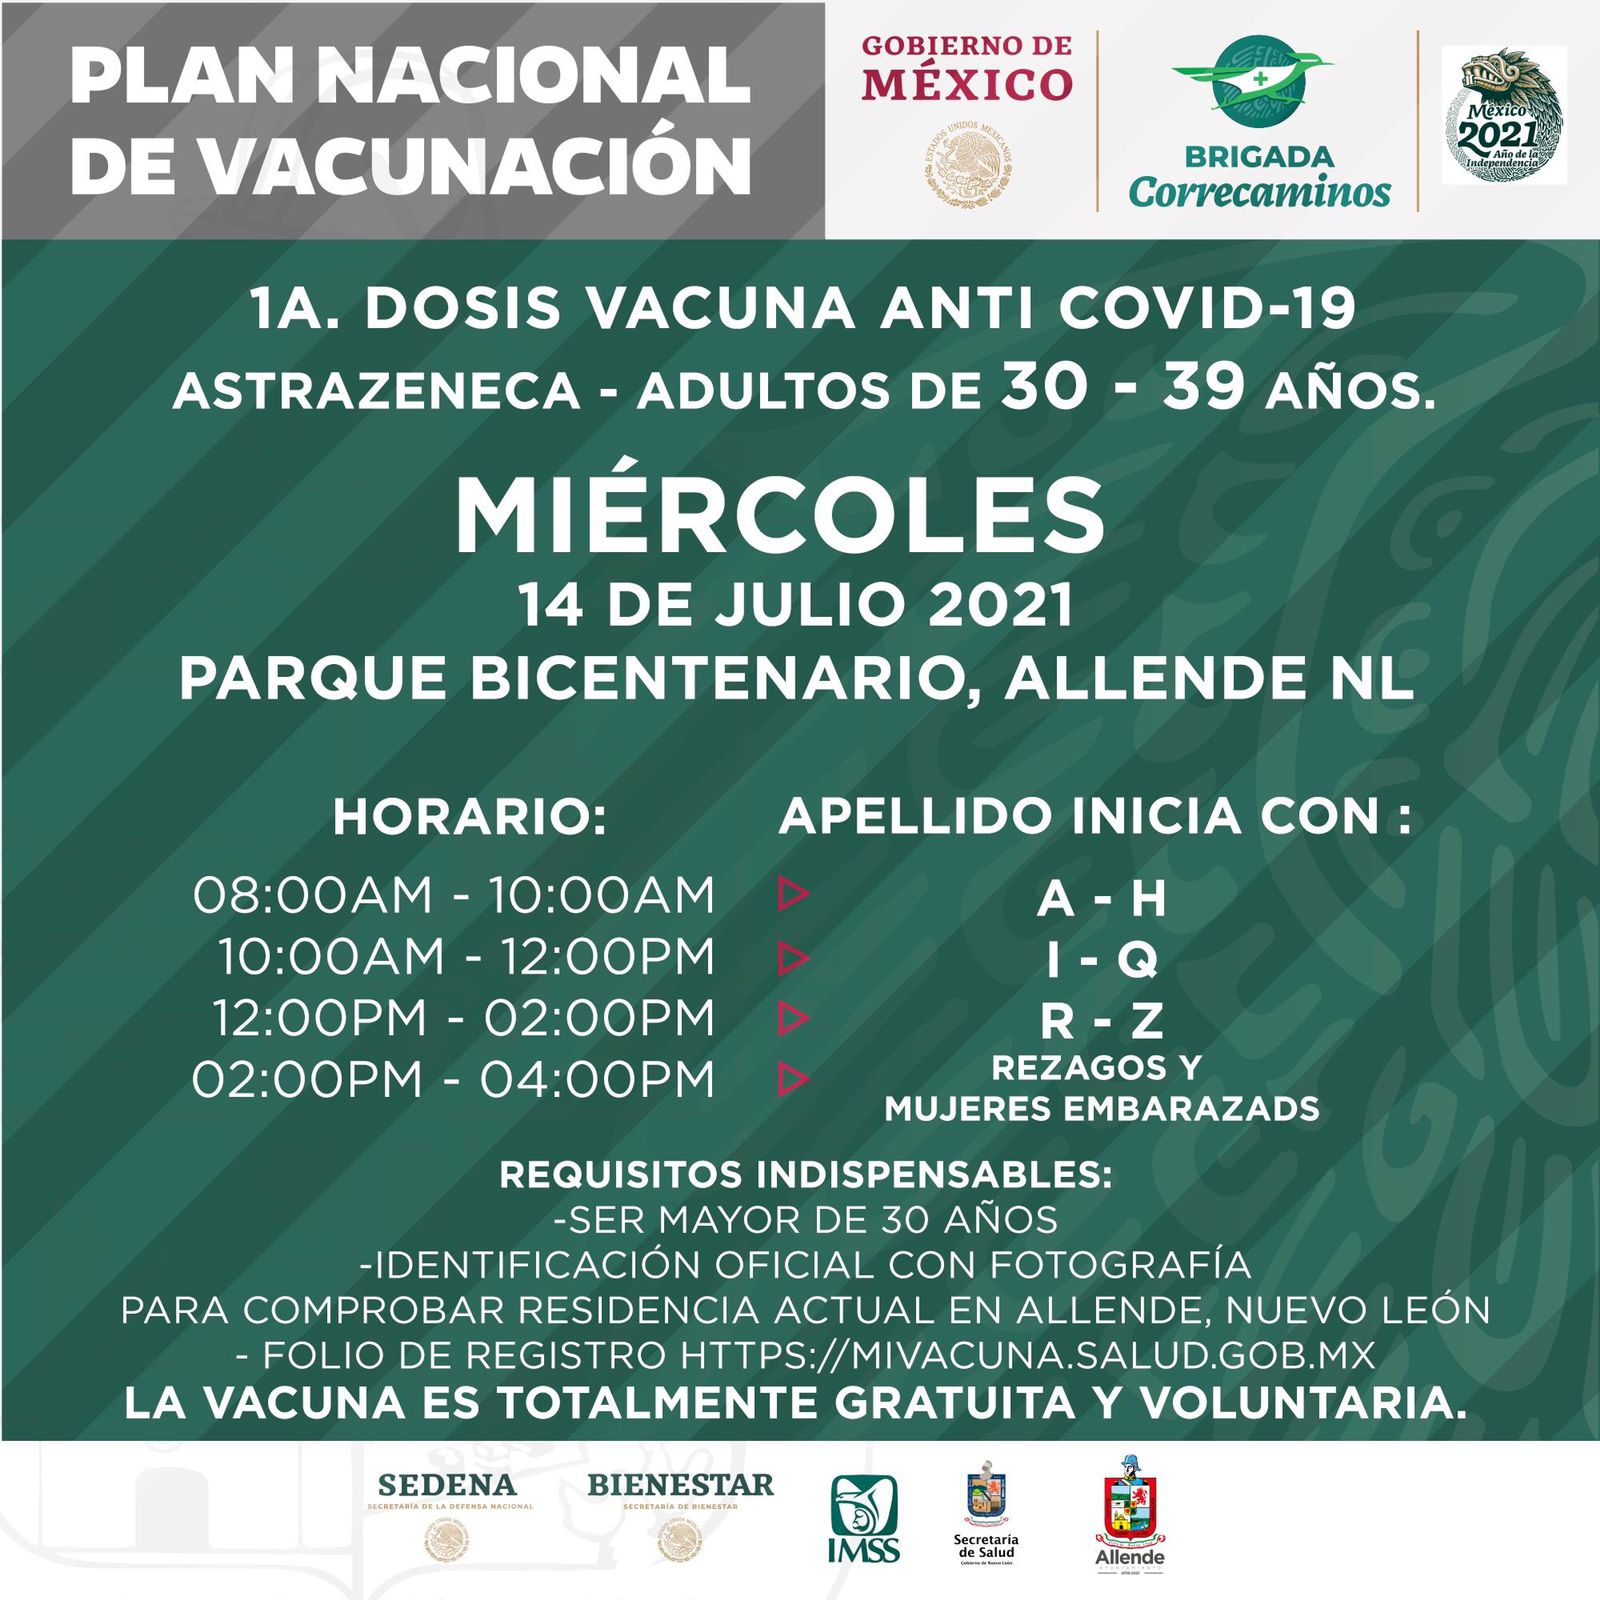 Mañana arranca vacunación para adultos 30-39 en Parque Bicentenario en Allende